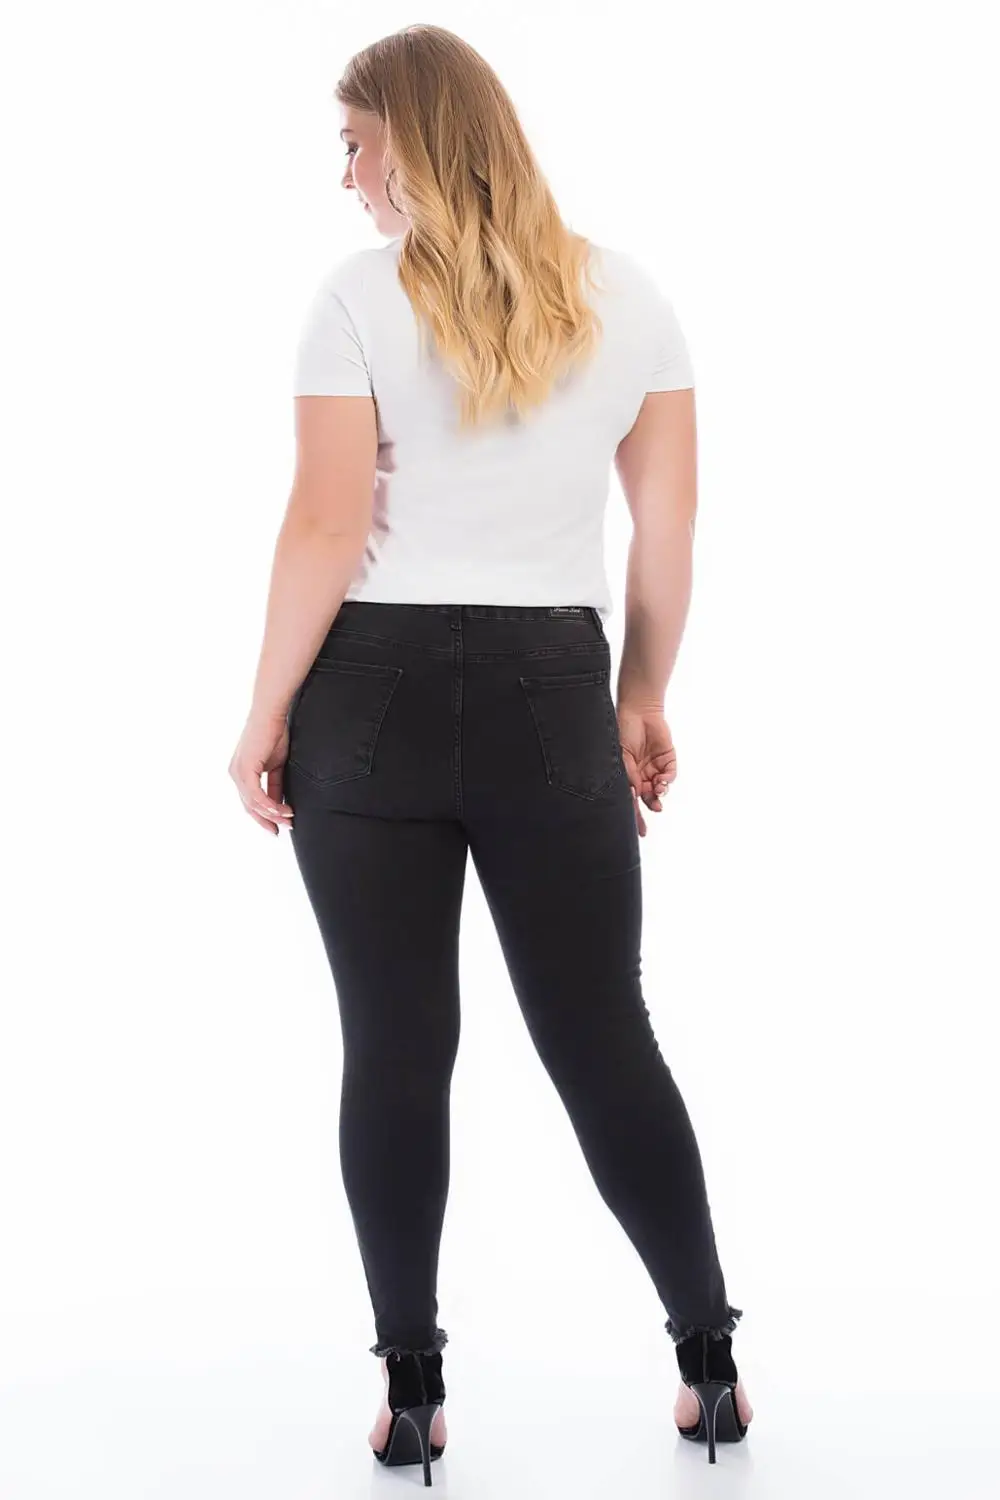 Женские джинсы с блестками, черные, размера плюс, 49108 от AliExpress RU&CIS NEW